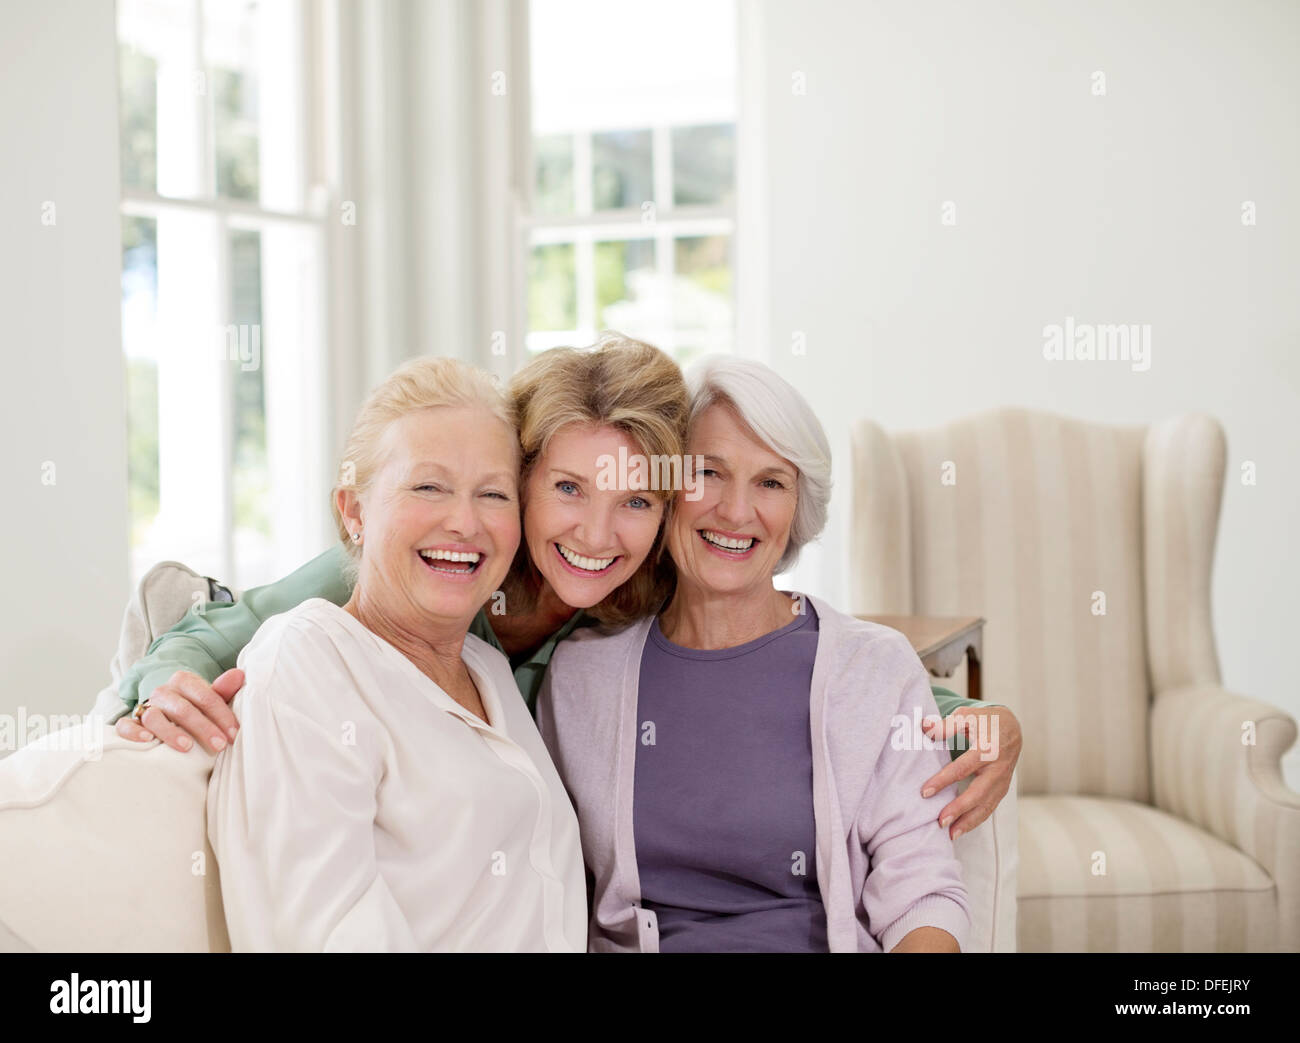 Portrait of smiling senior women in livingroom Stock Photo